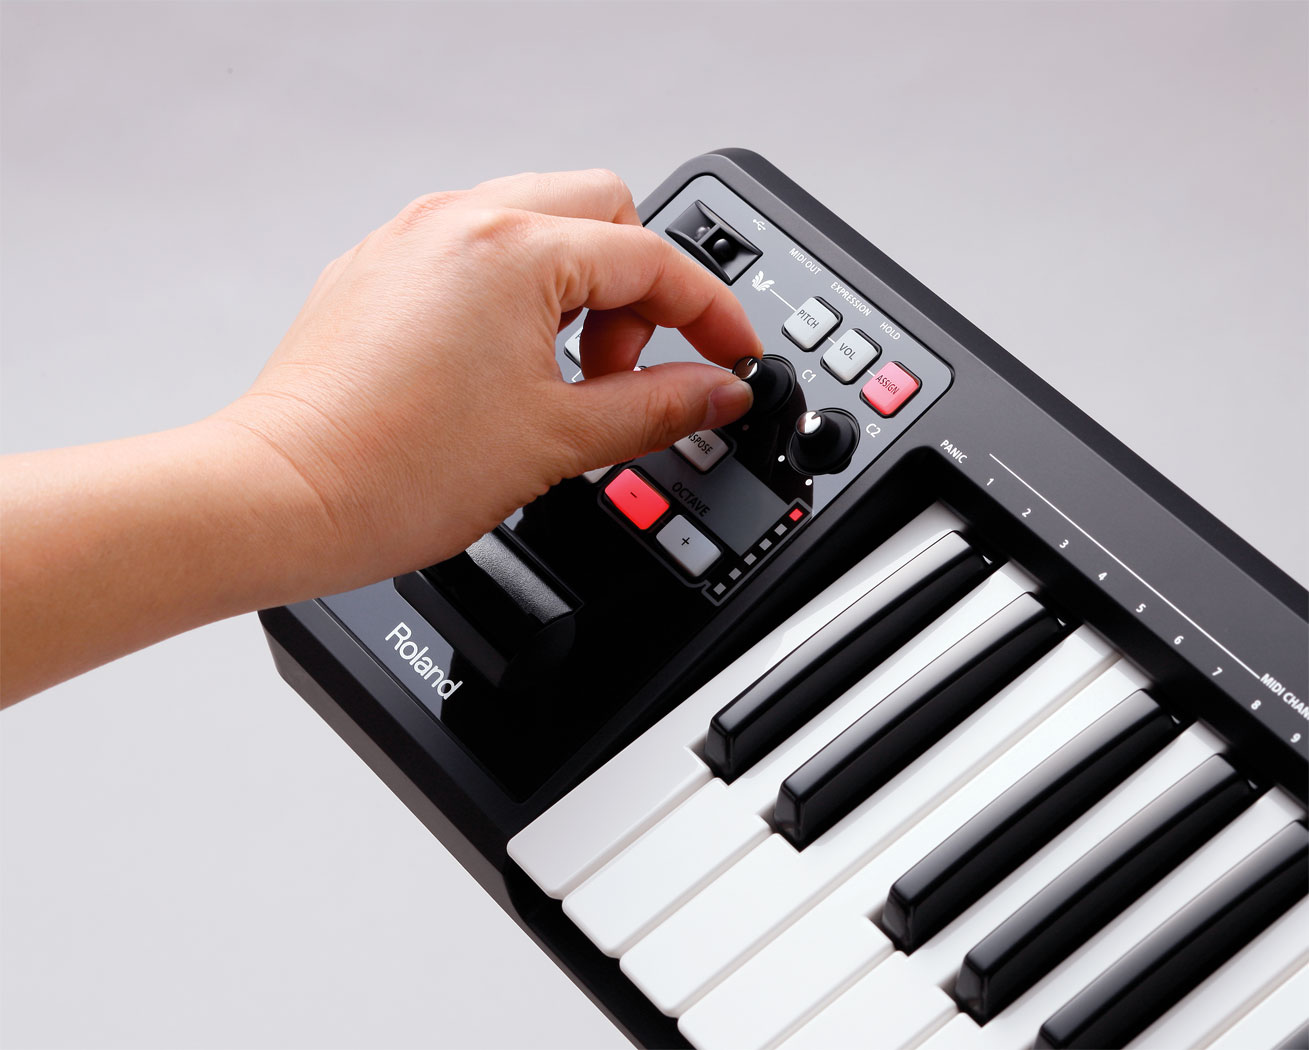 Roland A-49 MIDI Keyboard Controller - Black 888365409740 | eBay